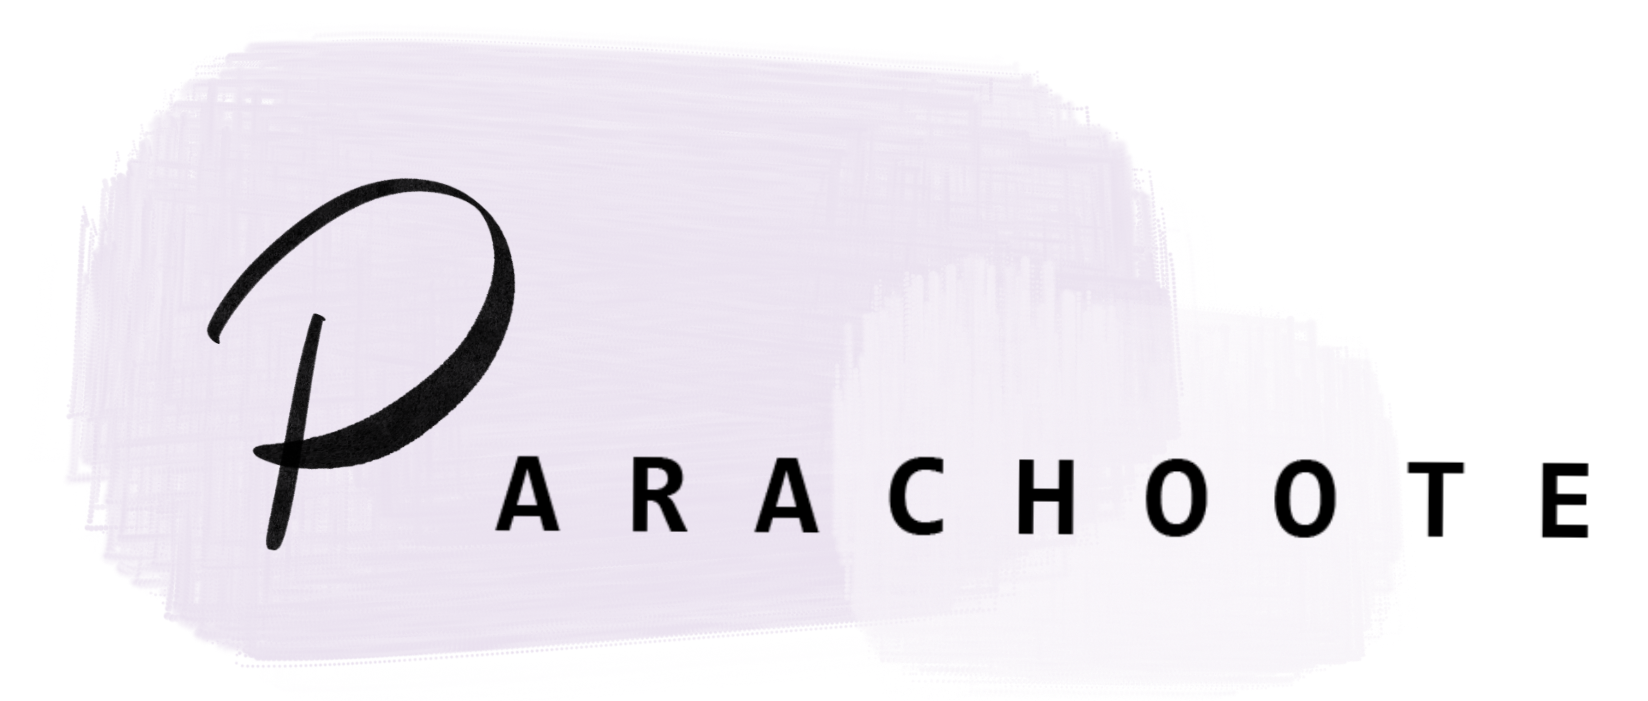 Parachoote